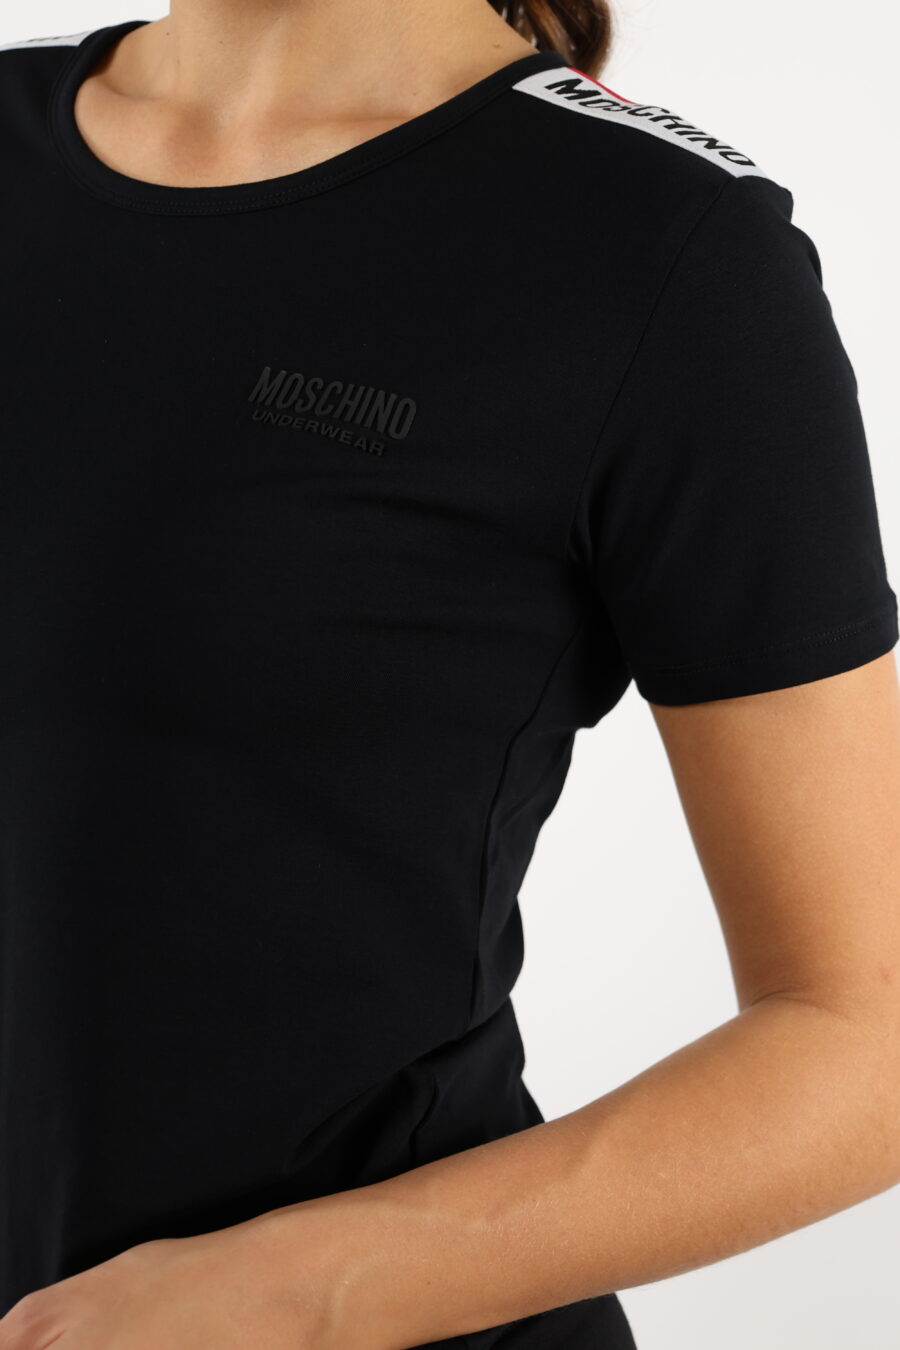 Schwarzes T-Shirt mit monochromem Logo auf dem Schulterband - 110513